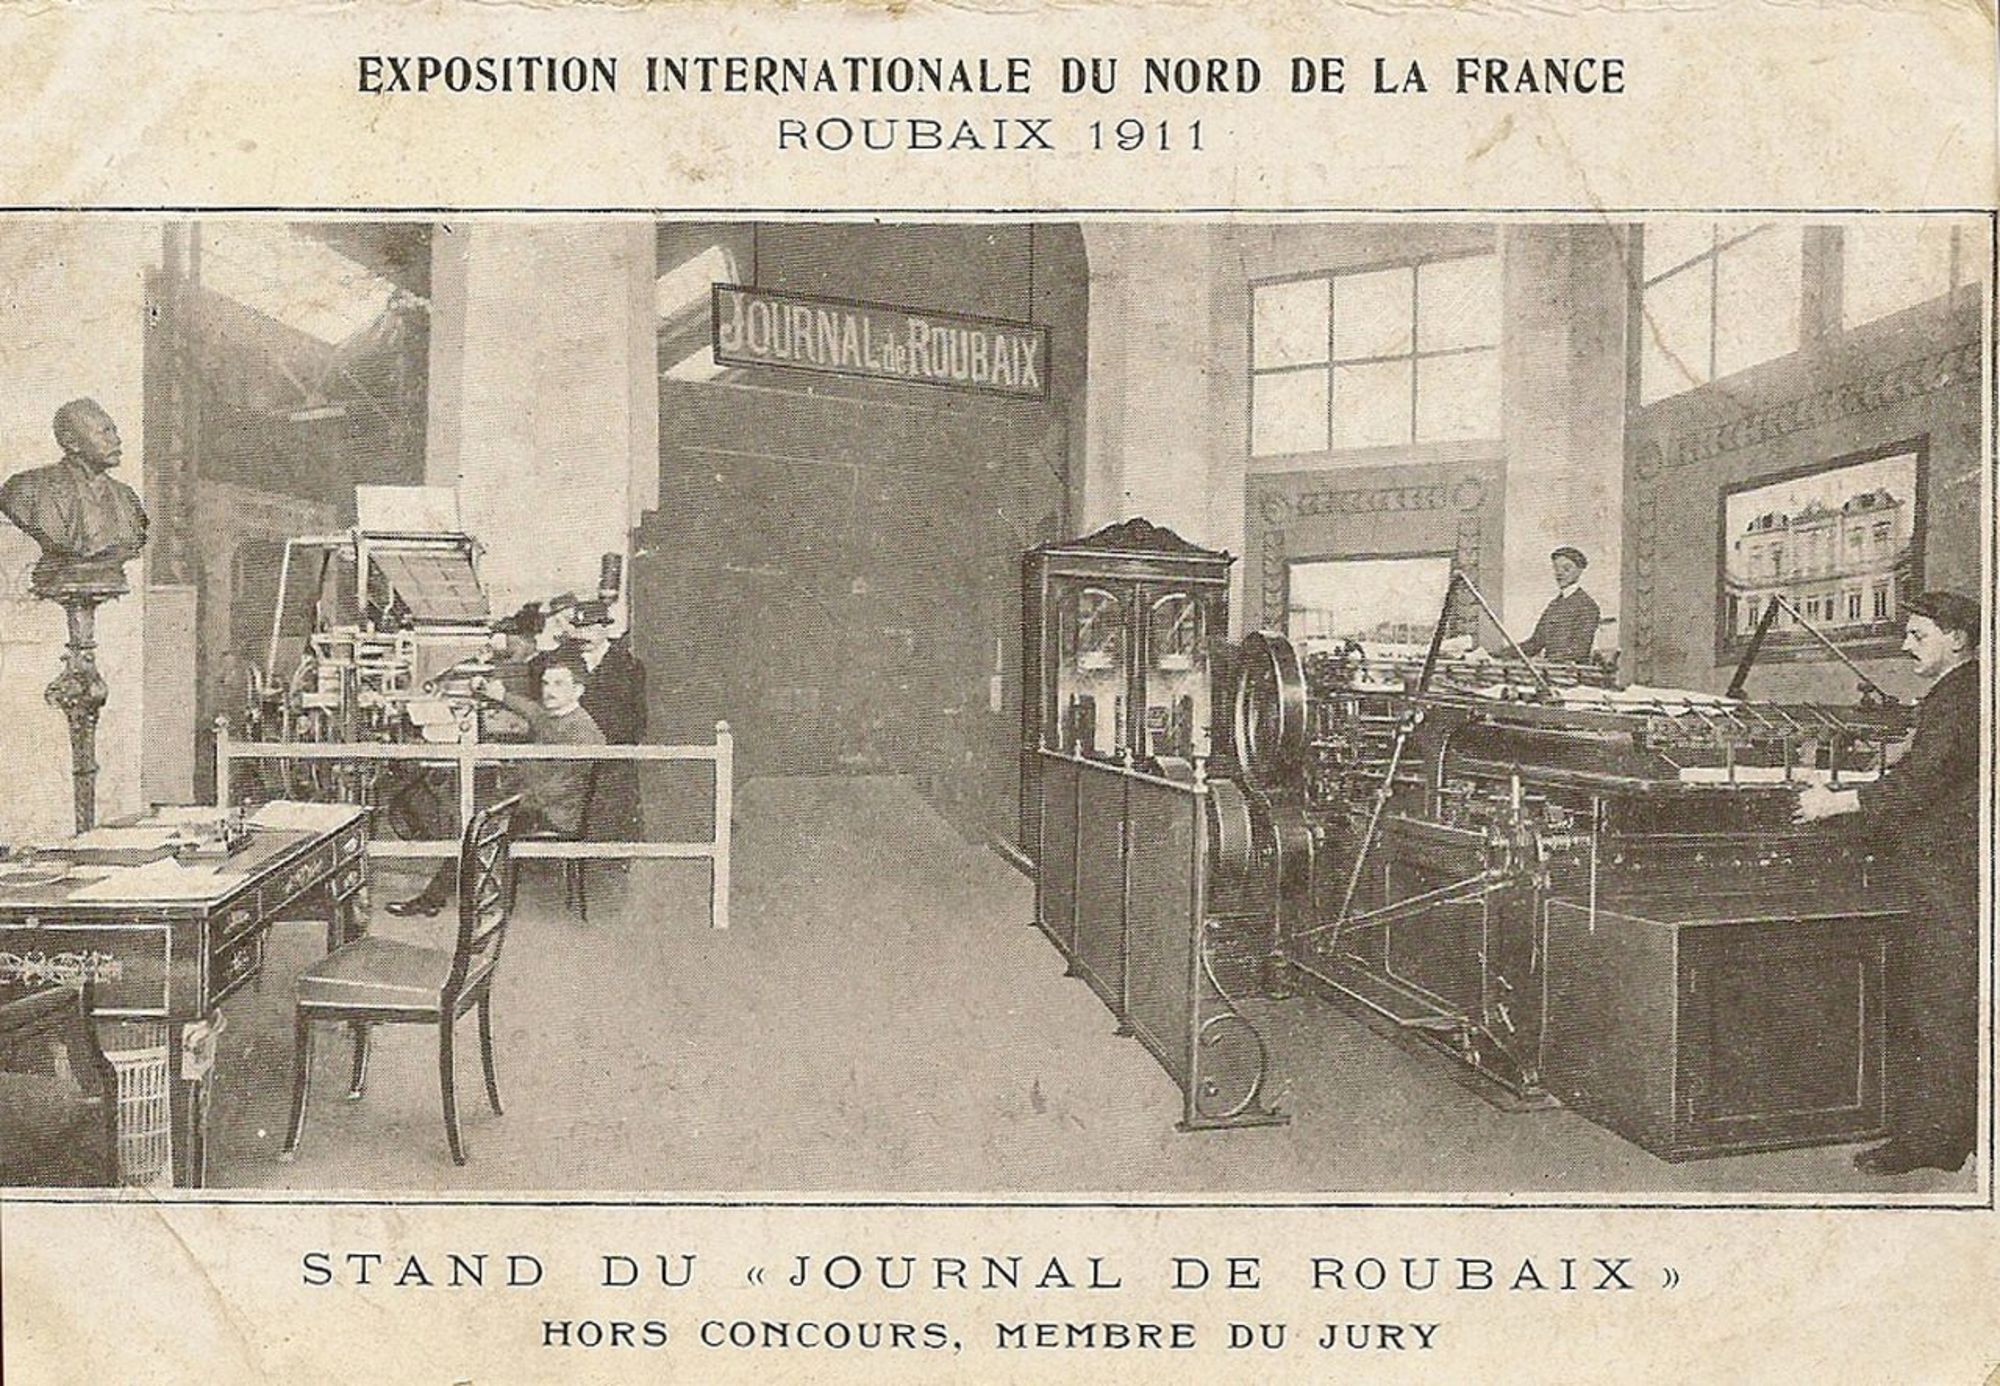 Exposition internationale du Nord de la France - Le Journal de Roubaix